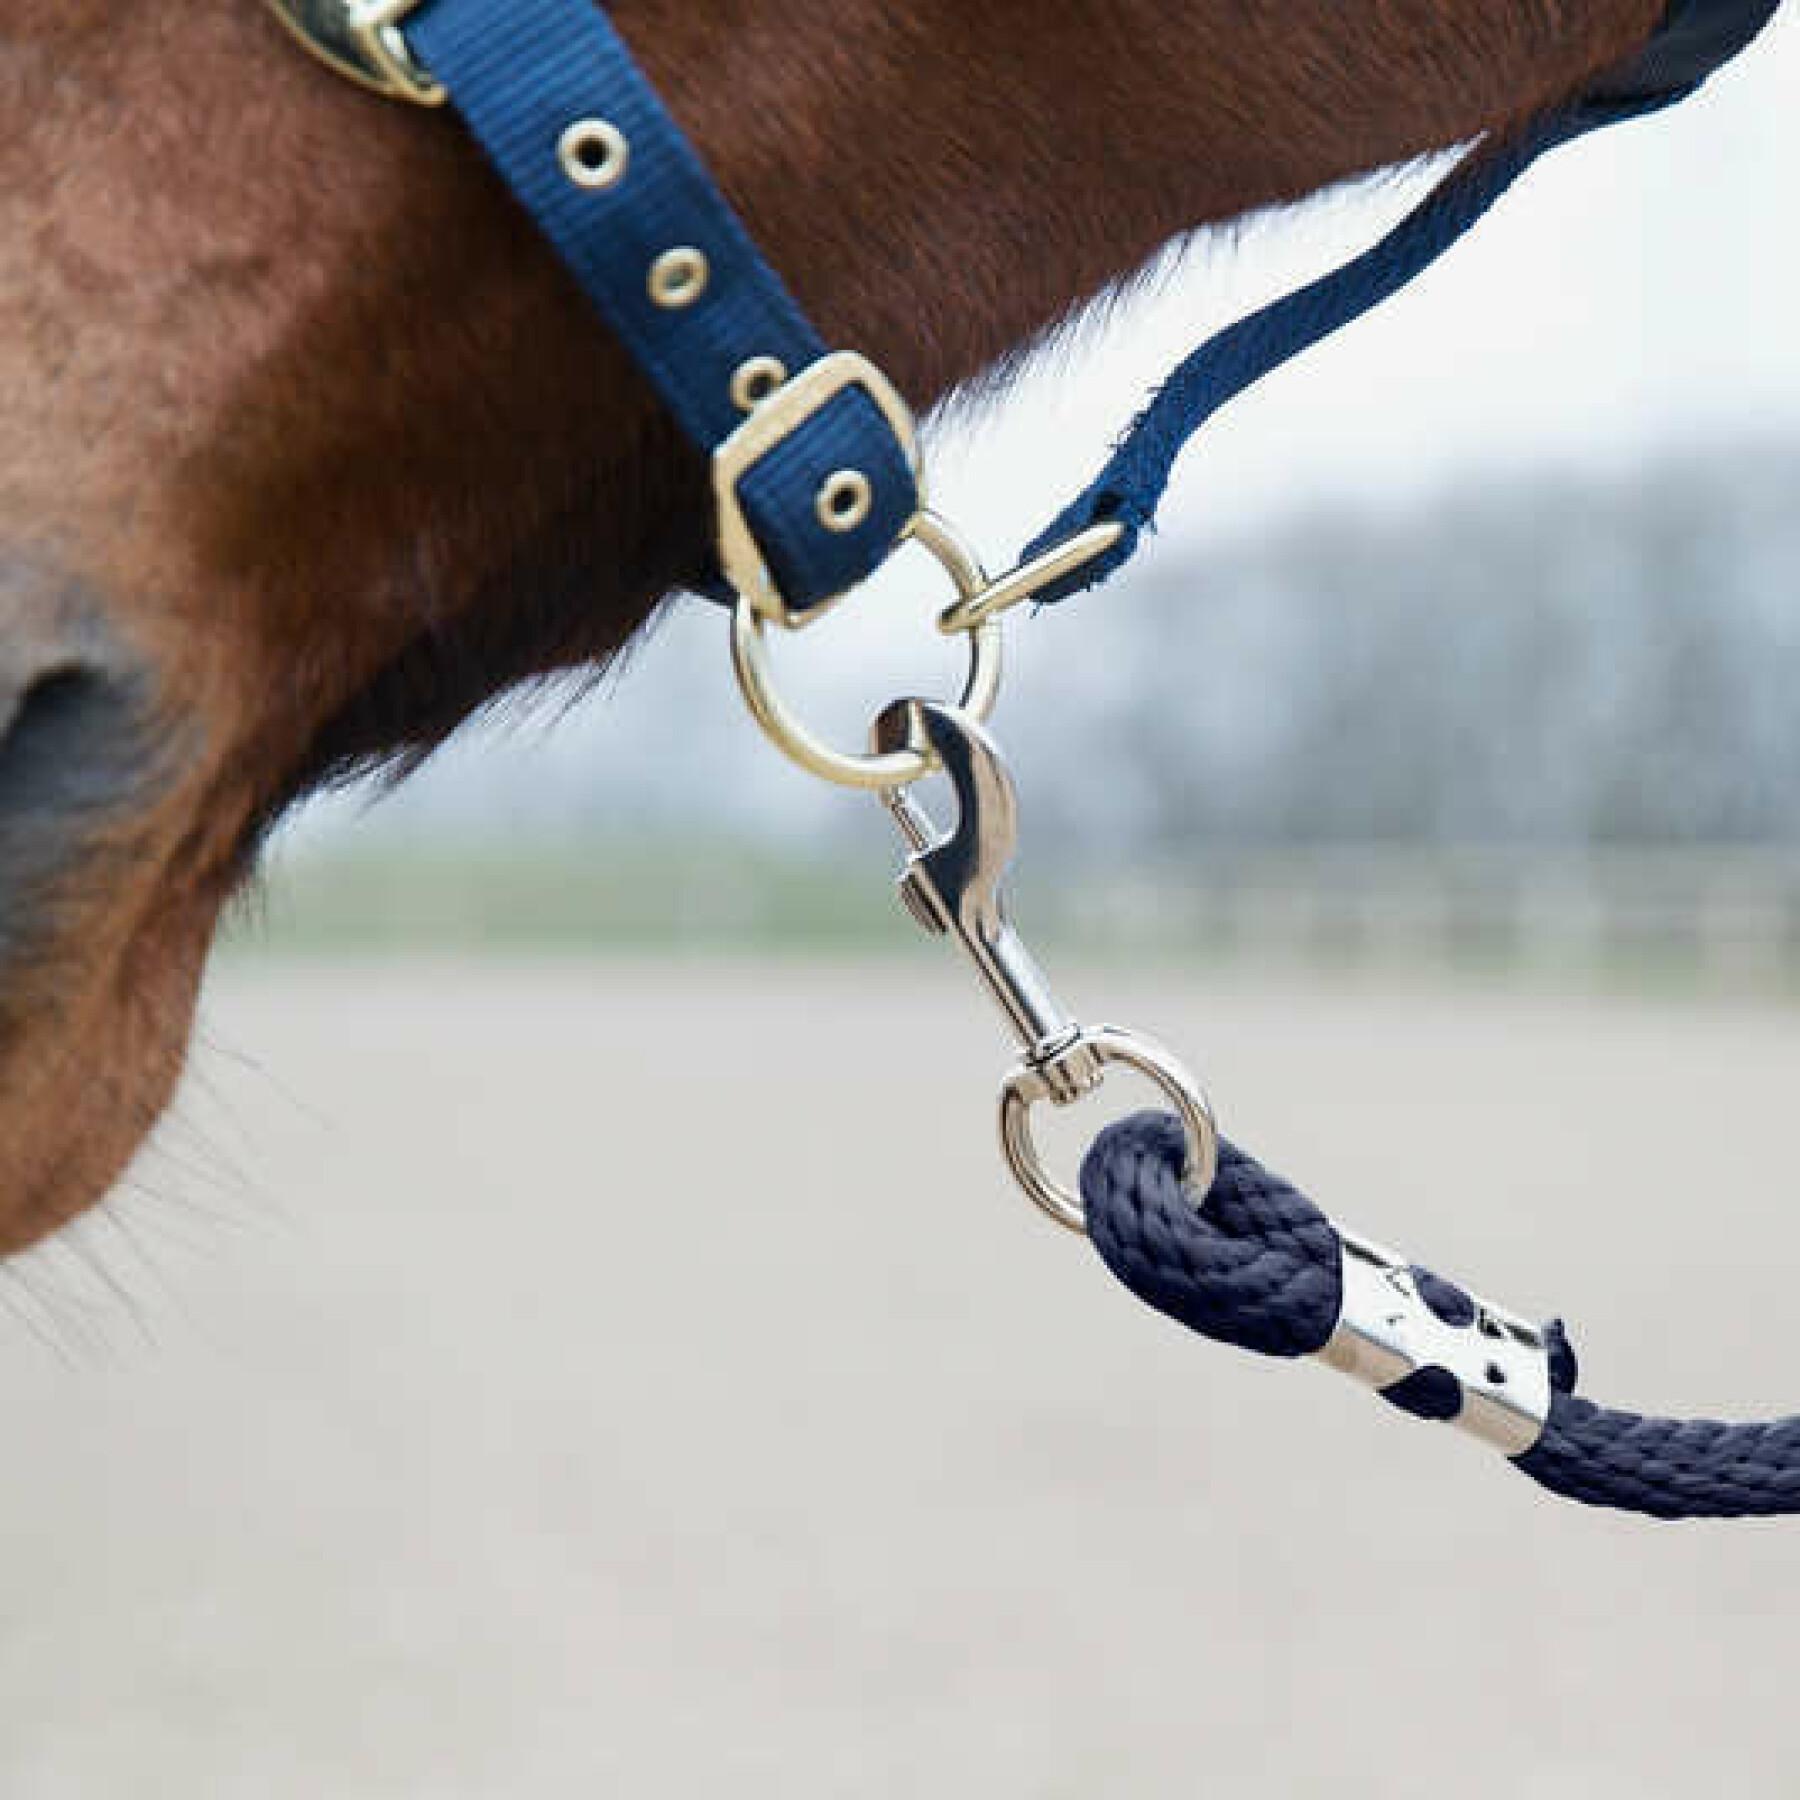 Cordón con mosquetón antipánico para caballos Horze